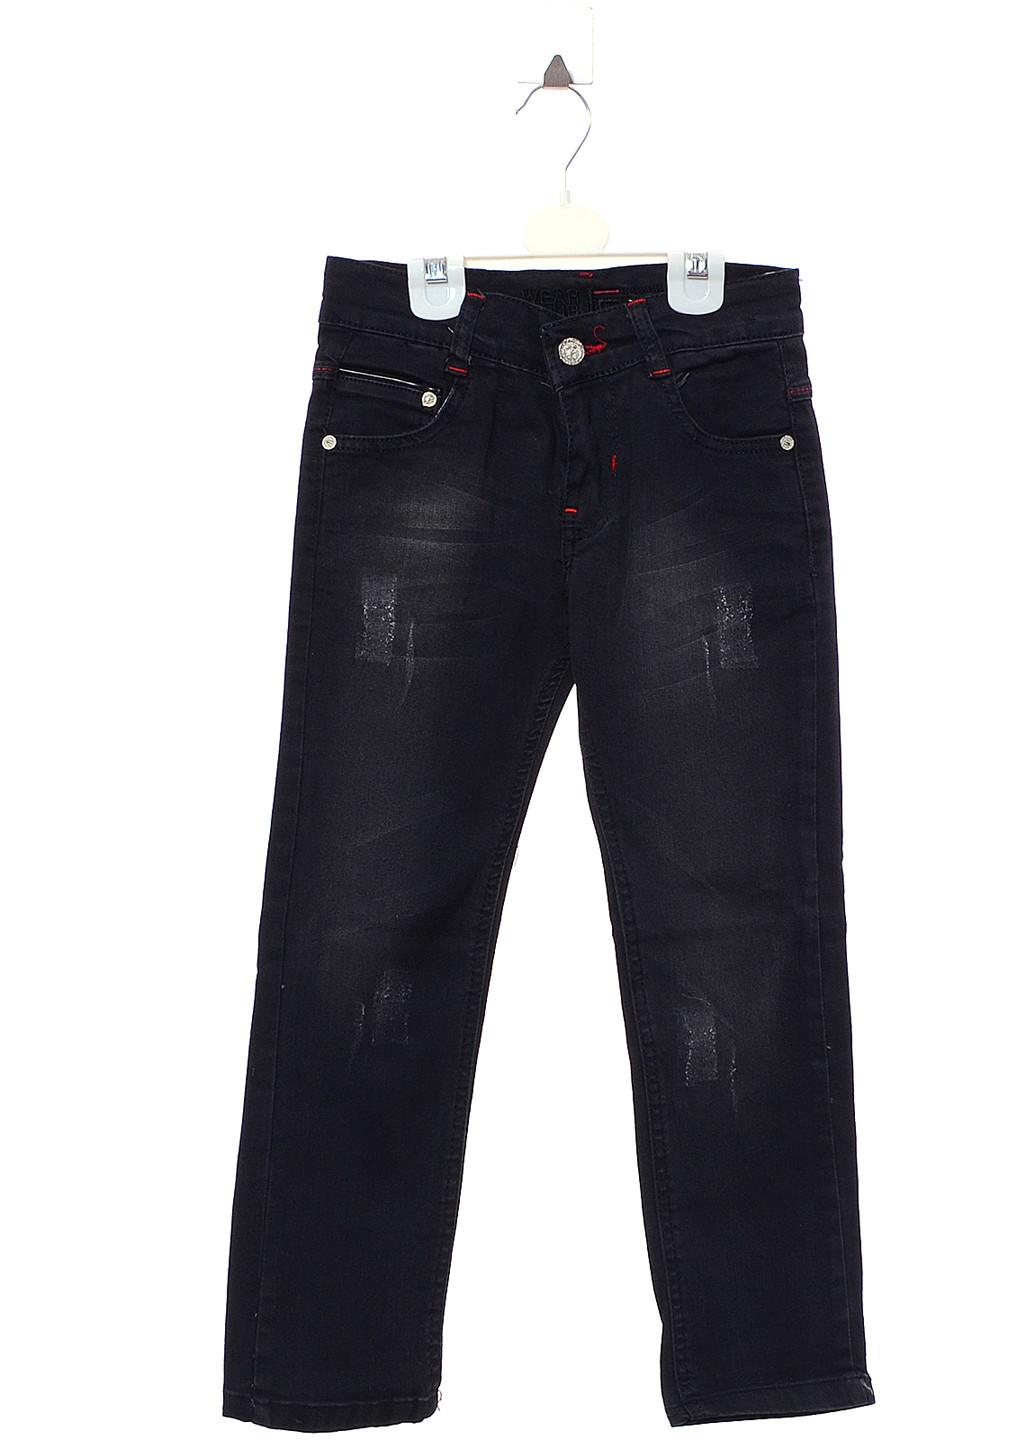 Черные демисезонные классические джинсы Wikilend Kids